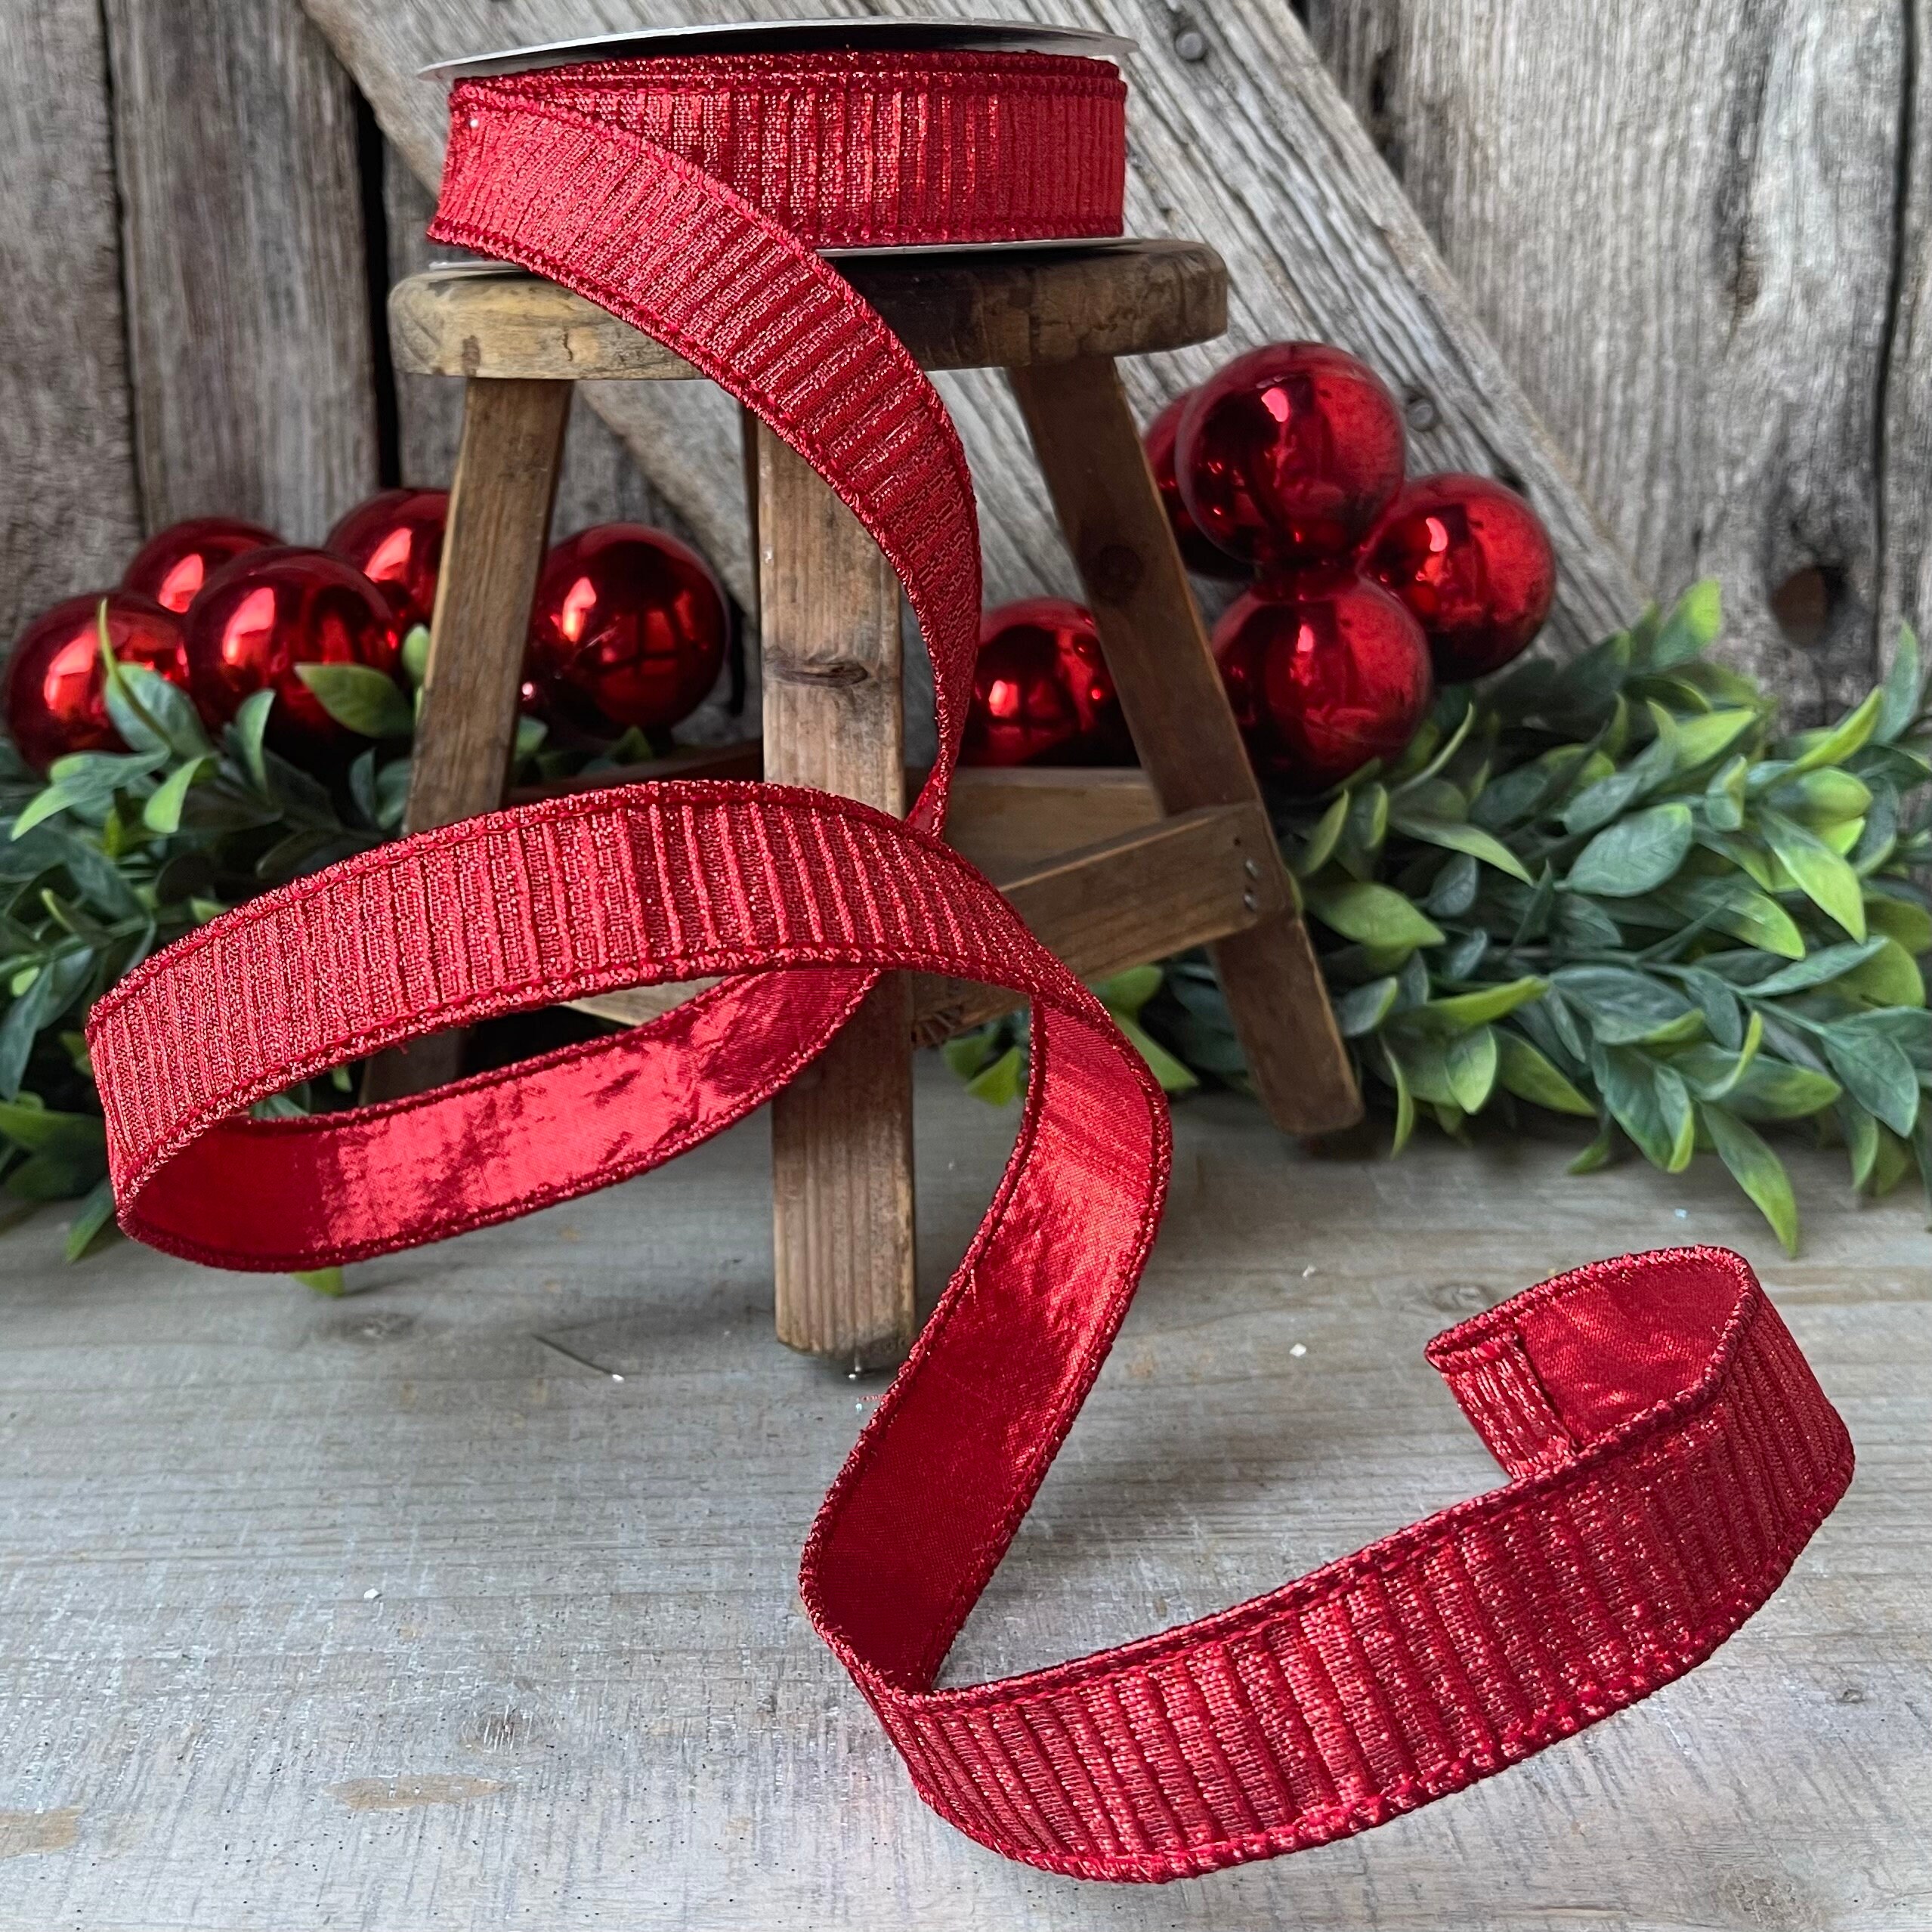 DIY Ornament With Glitter & Velvet Ribbon - Summer Adams